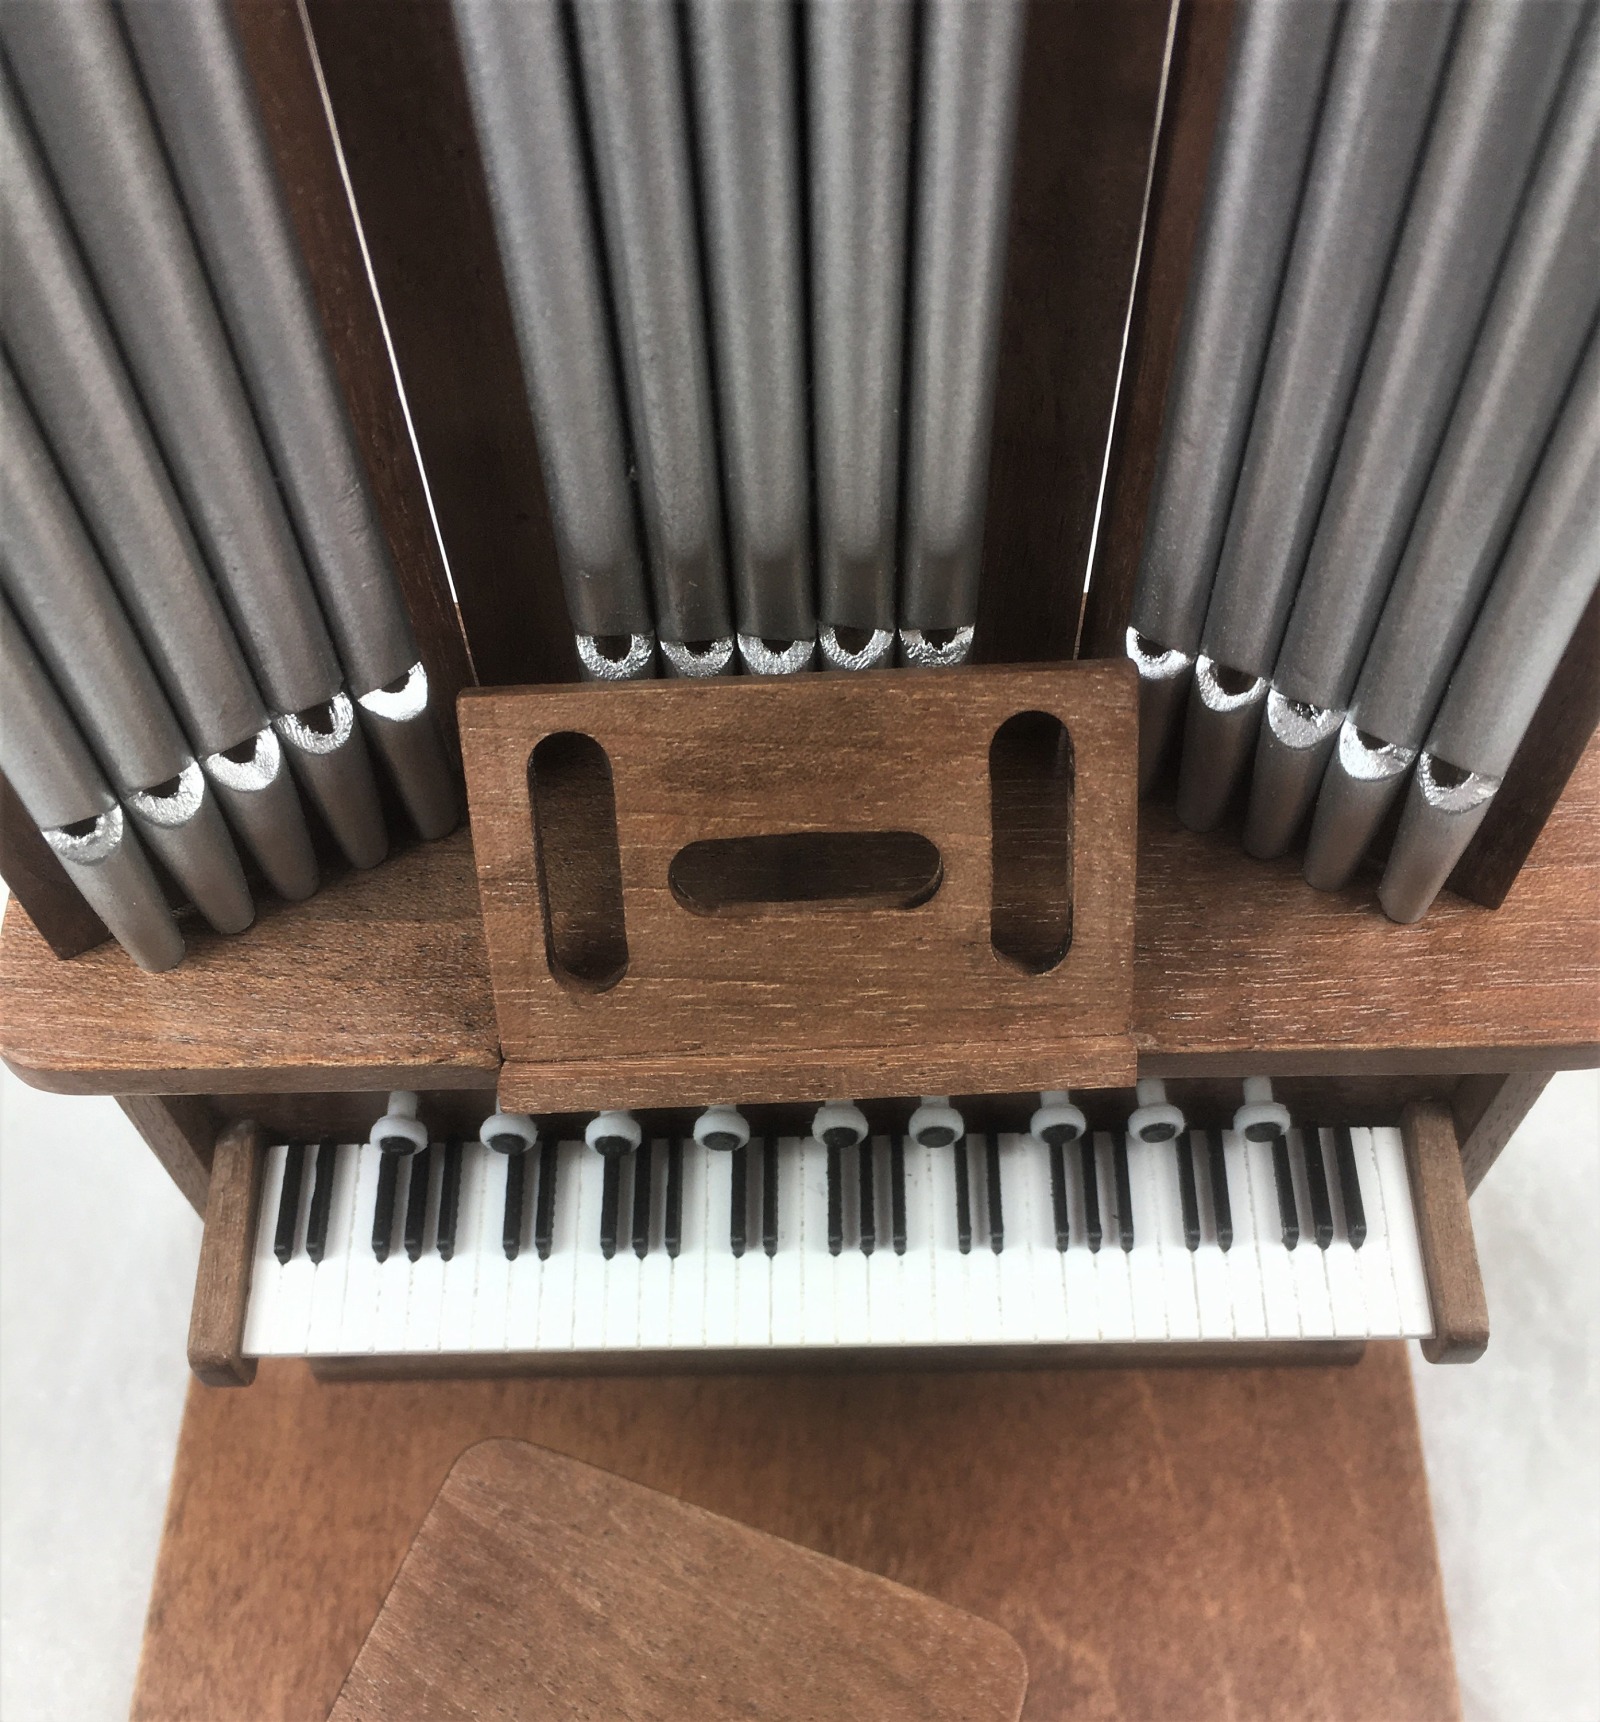 Klaviertastatur Pianotastatur Orgeltastatur zum einbauen in ihr eigenes hergestelltes Instrument für das Puppenhaus Miniatur 1zu12 7